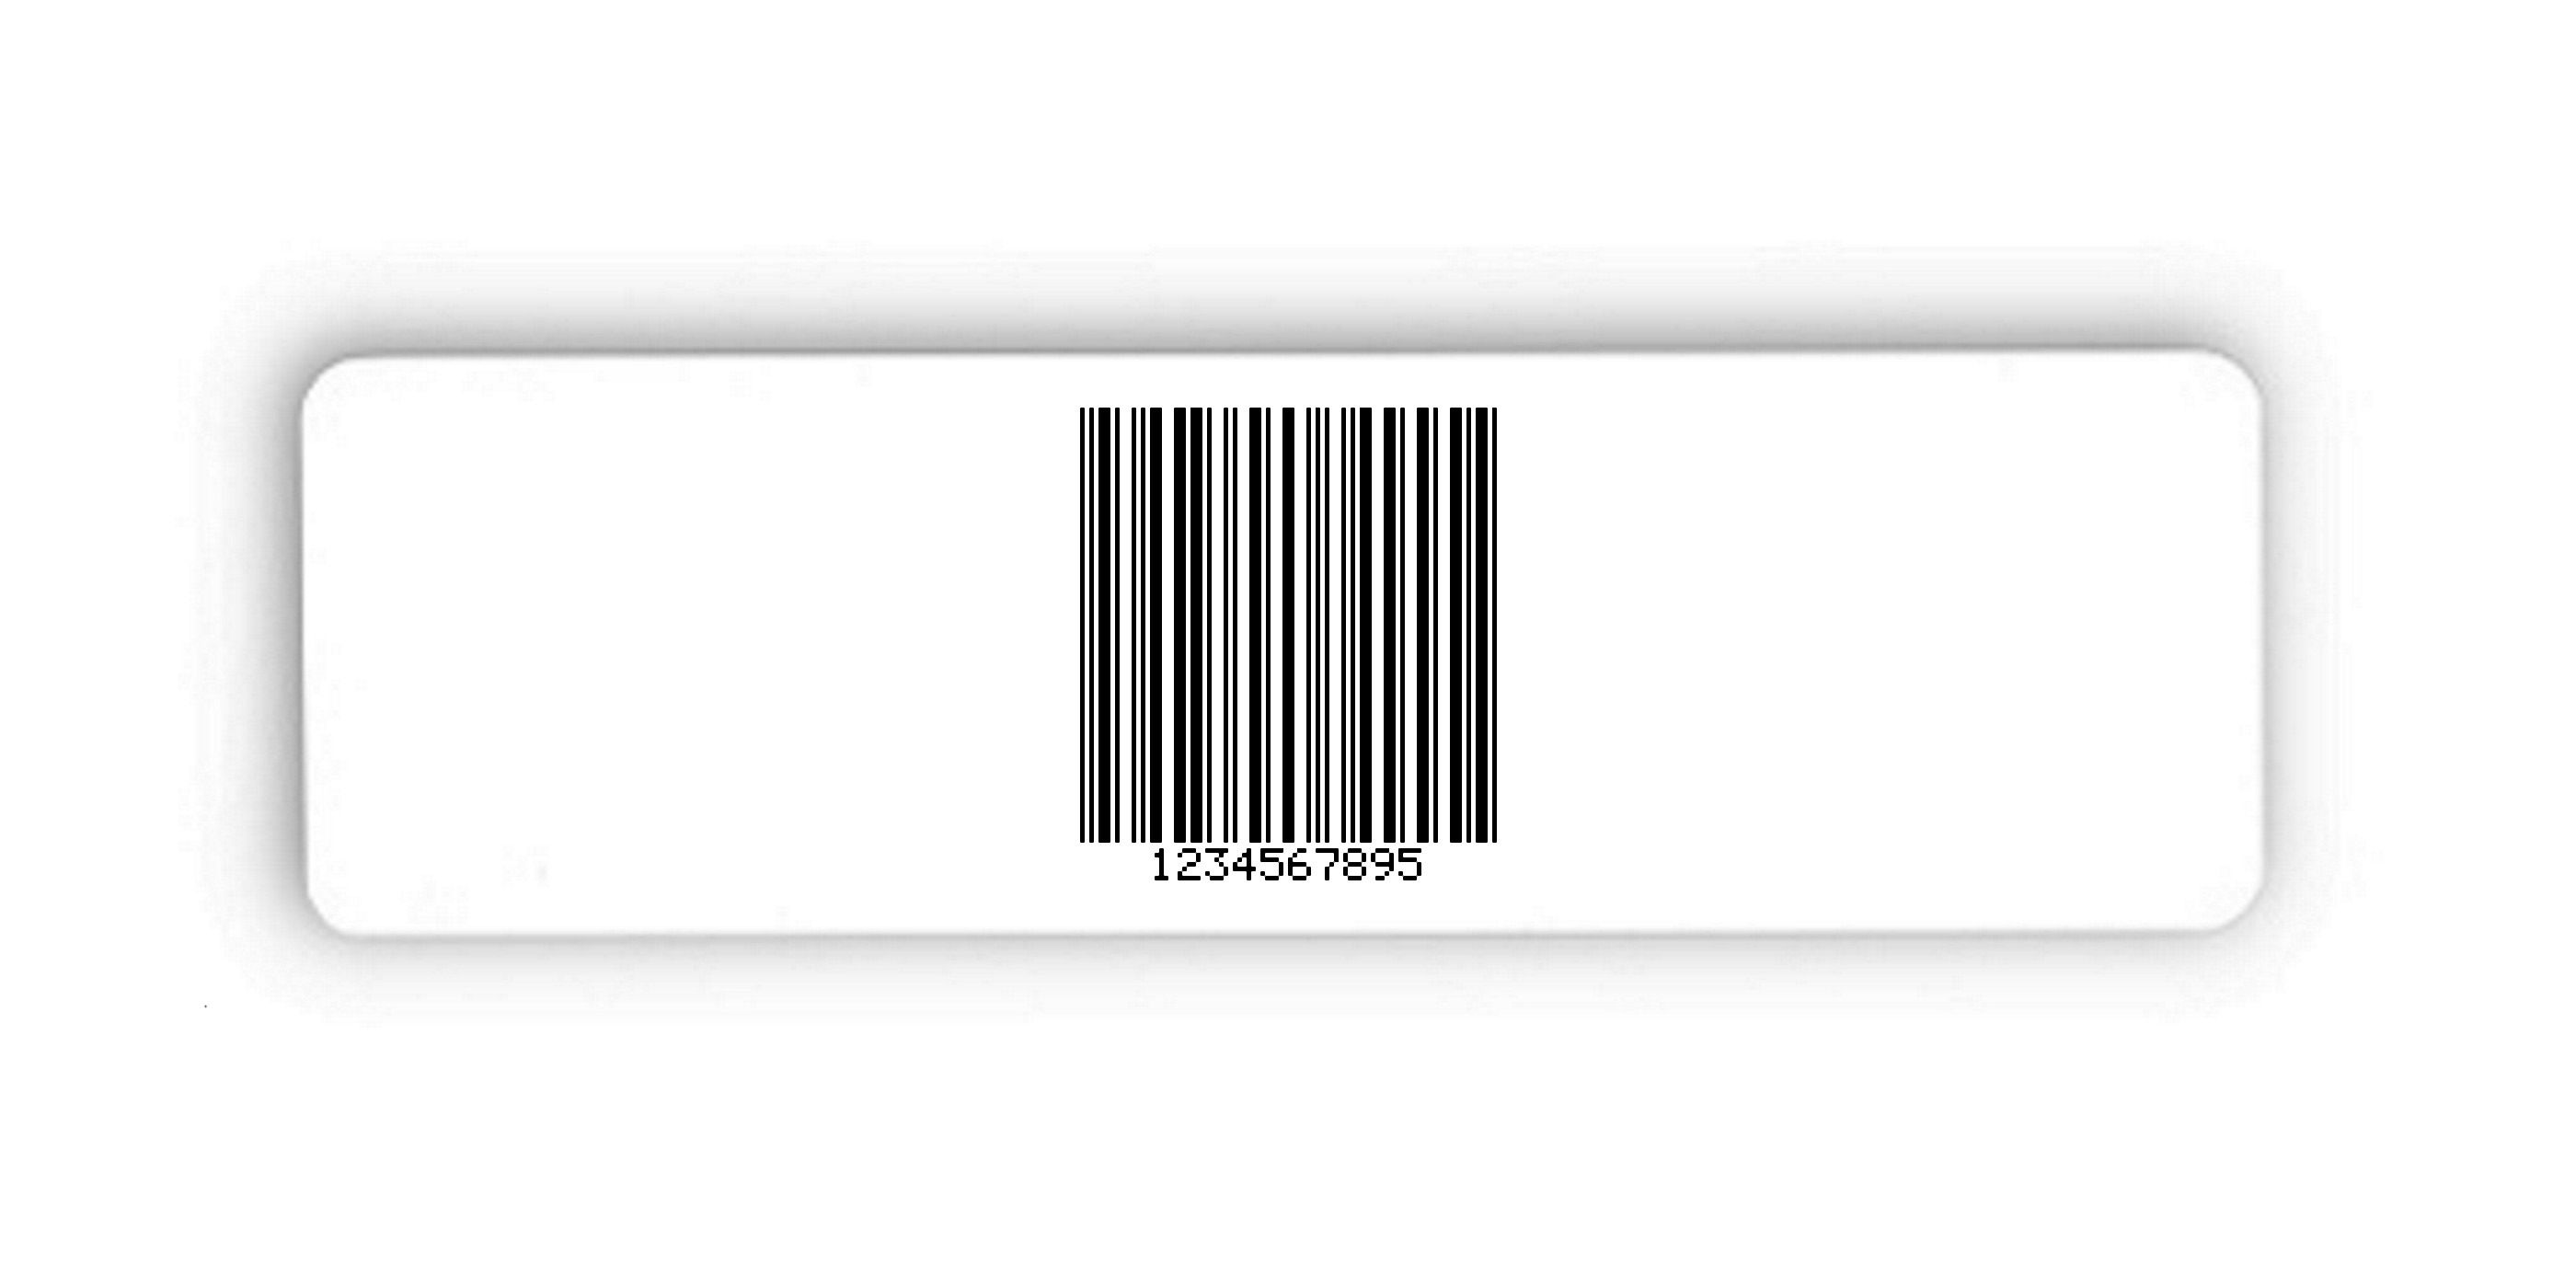 Universaletiketten Material:Folie hochglänzend weiß Größe:150x50mm Kopfzeile:"ohne" Barcode:2a5 mit Prüfziffer Stellenanzahl:10-stellig Ausführung:2 Etiketten pro Nummer Menge:100